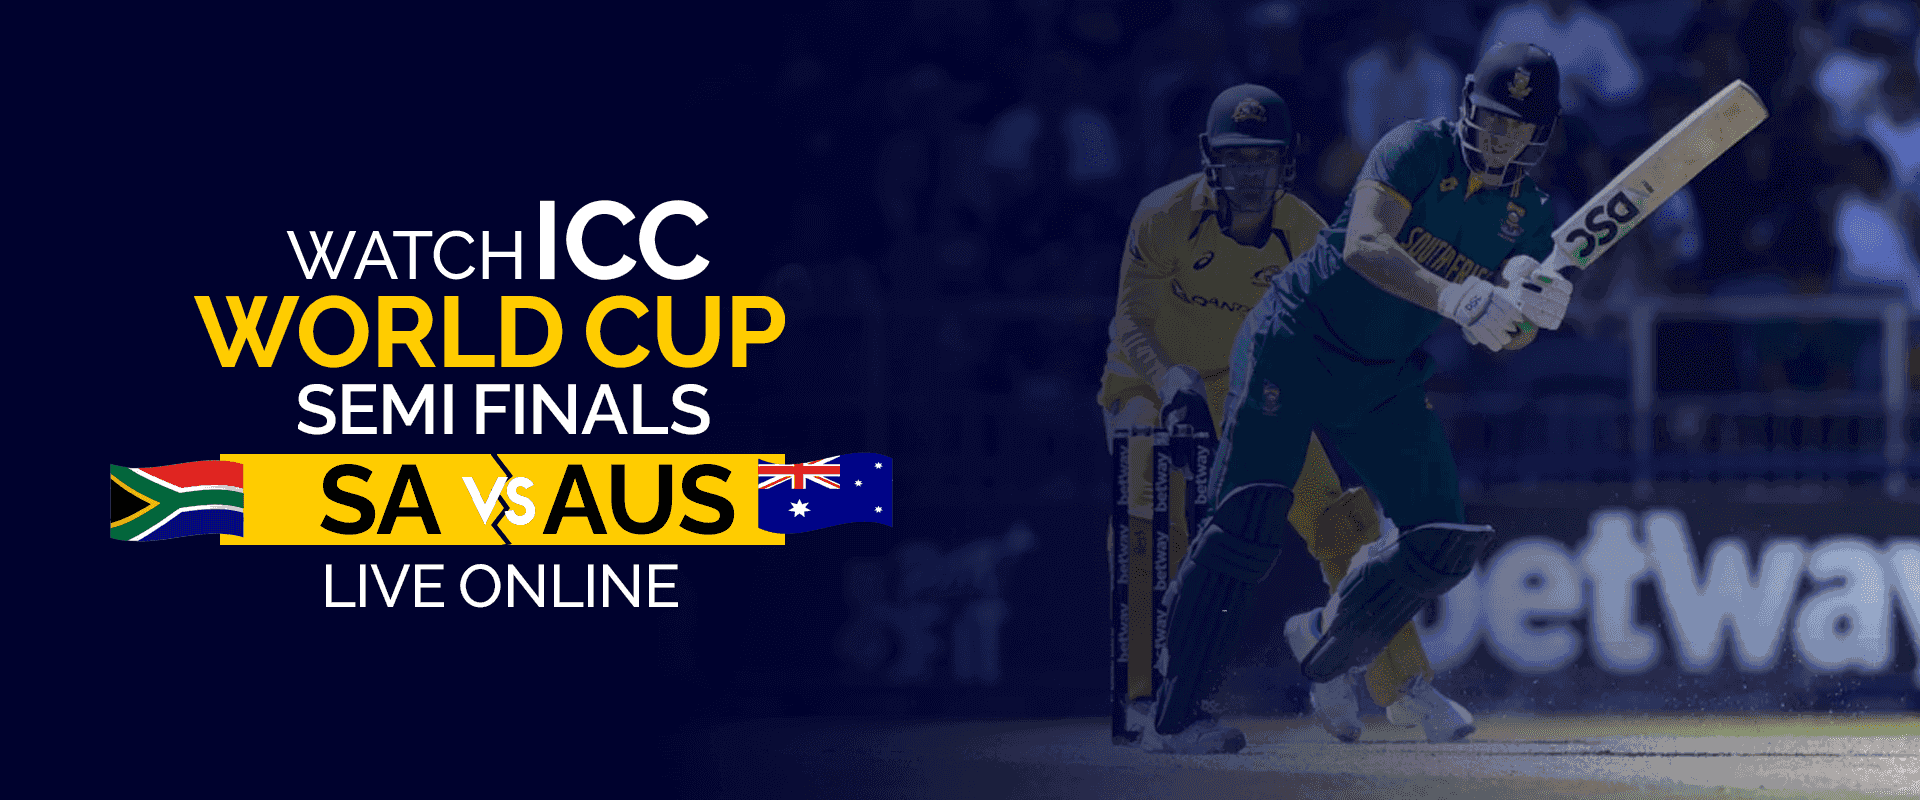 Смотрите полуфинал чемпионата мира ICC против Австралии в прямом эфире онлайн